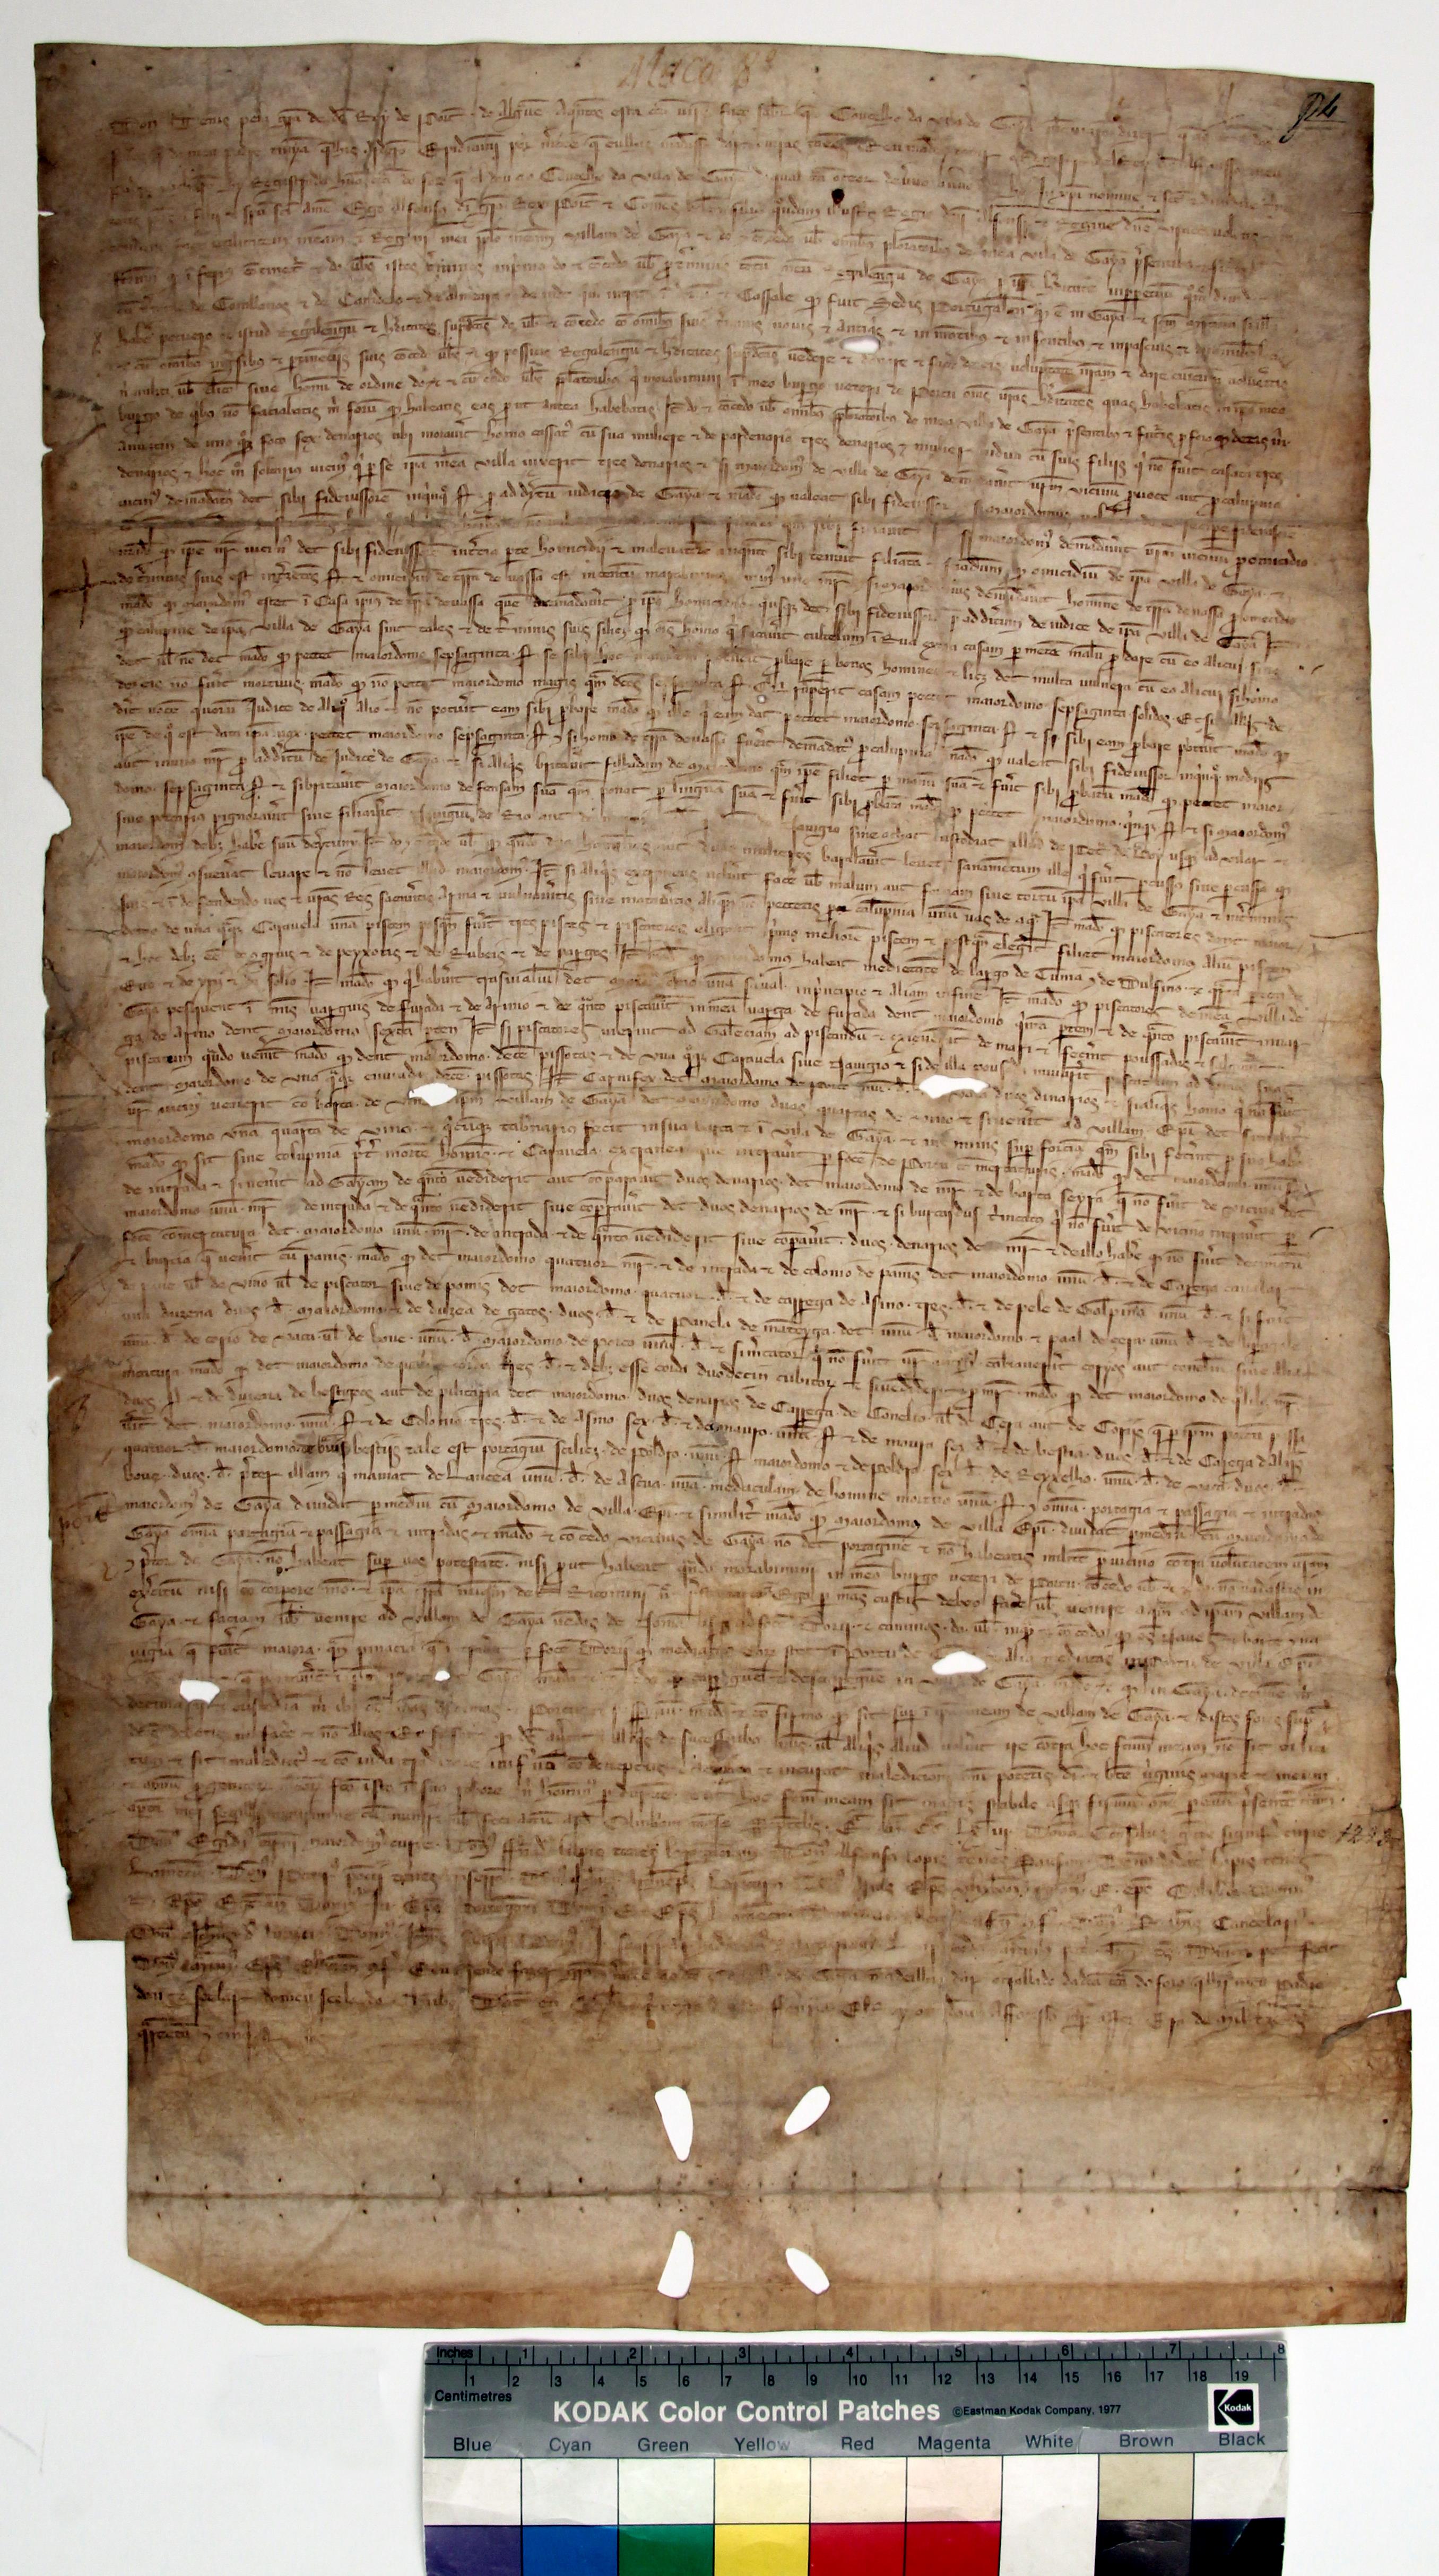 [Traslado da carta de foral concedida à vila de Gaia por D. Afonso III]